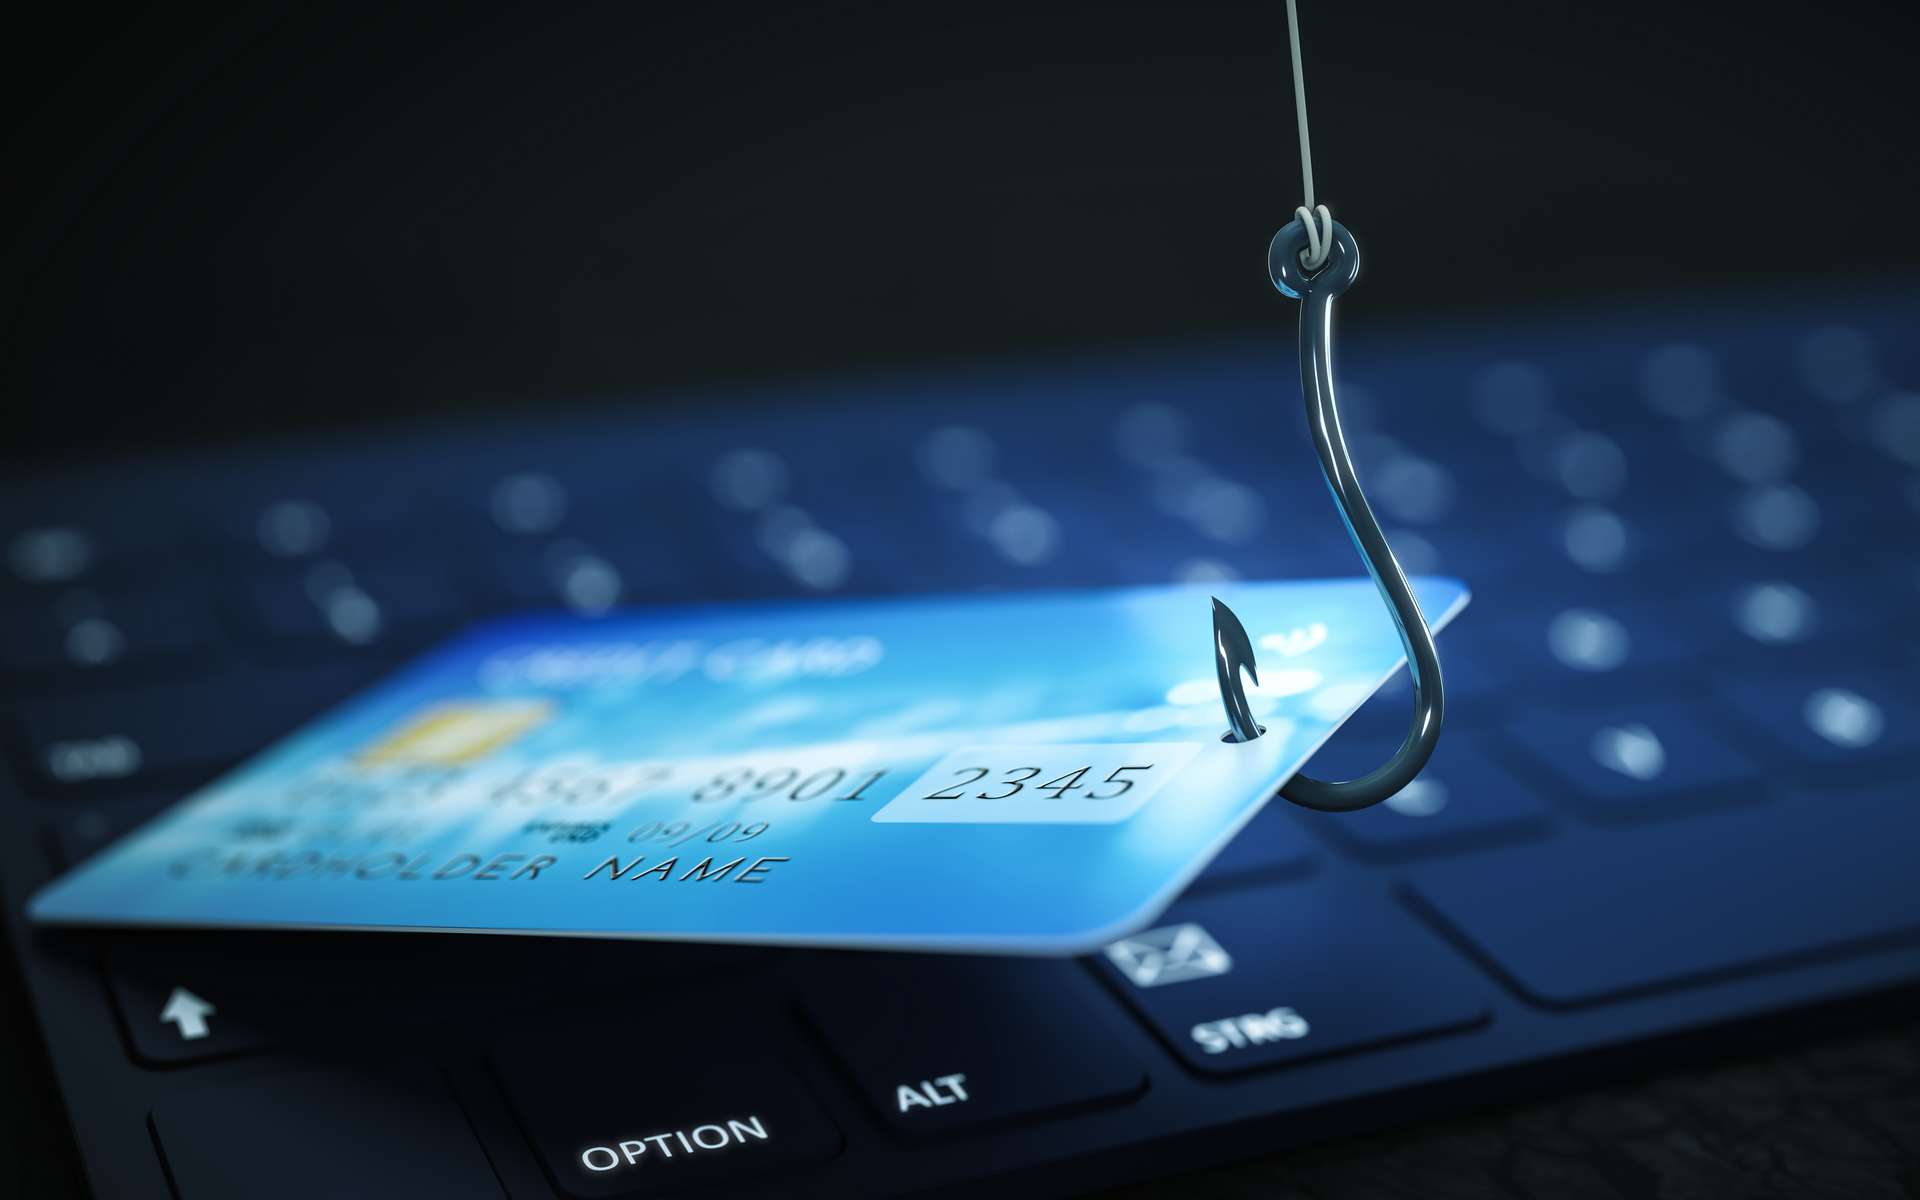 Le phishing, ou hameçonnage, est une escroquerie sur Internet. © magann, Adobe Stock